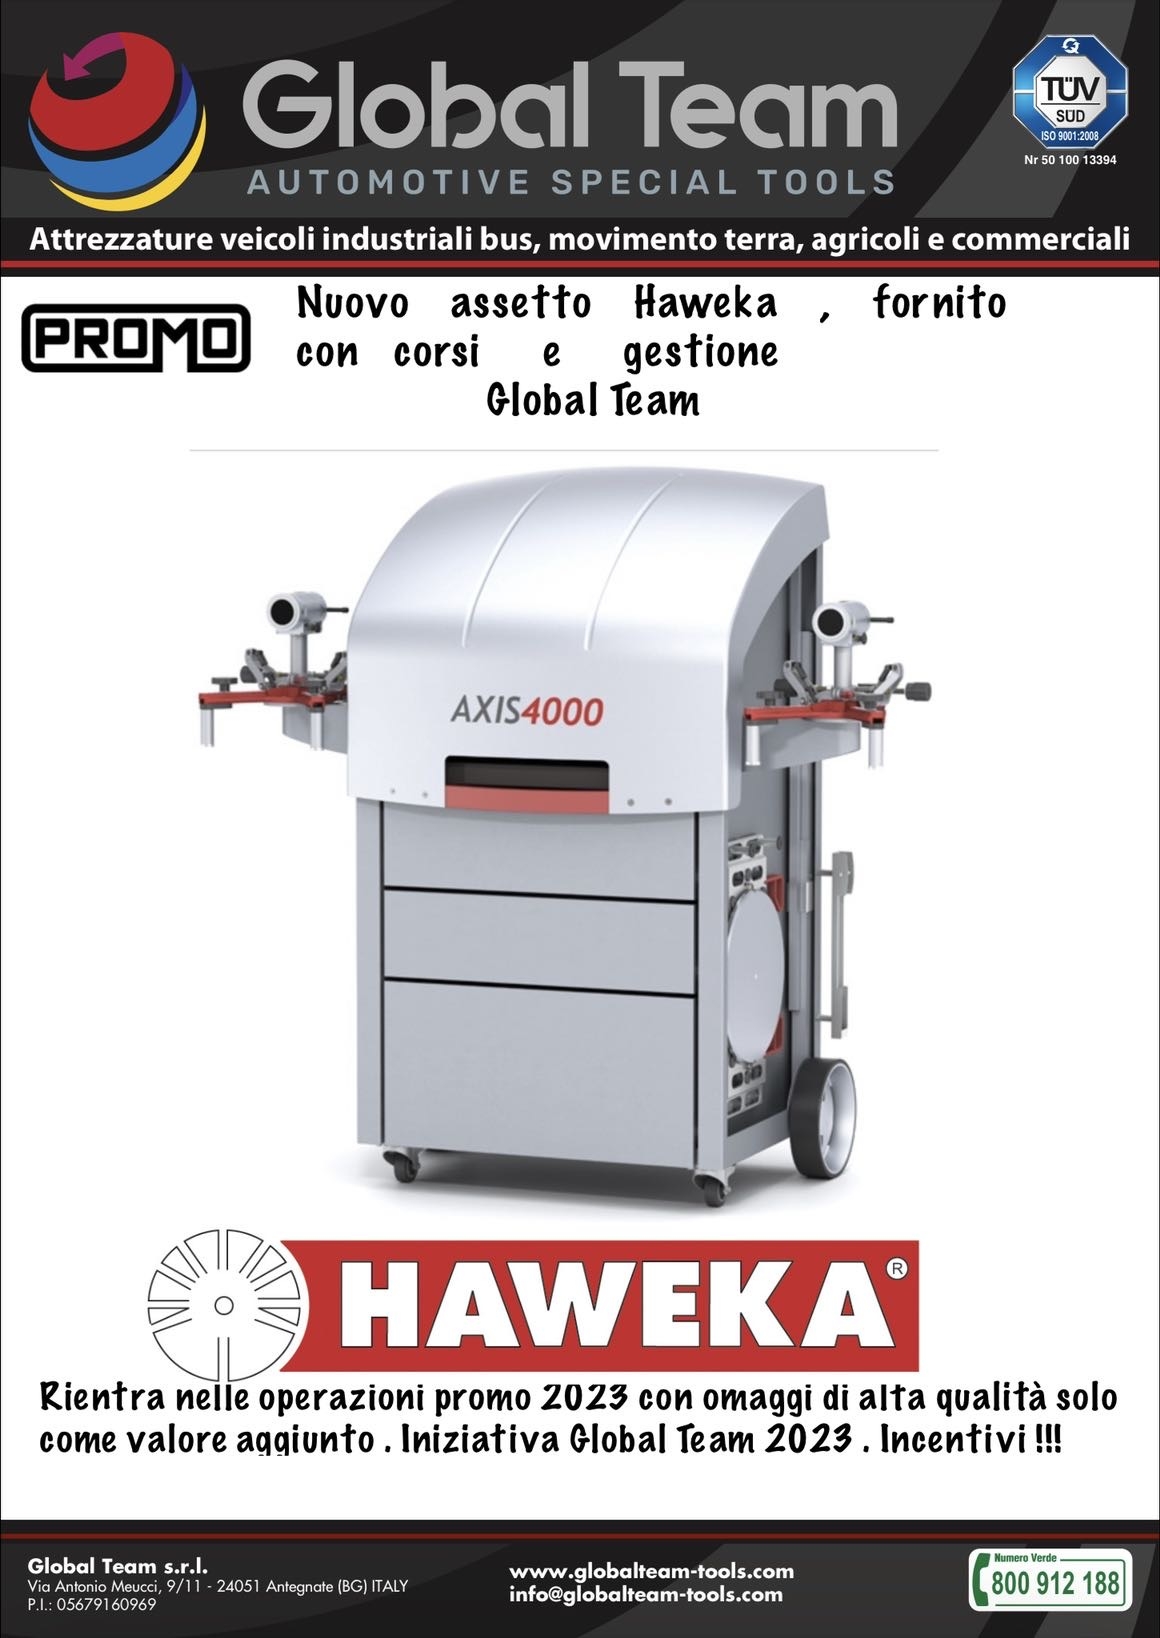 Promozione nuovo assetto laser Haweka standard, mai stato cosi' conveniente. Provate a richiedere info.